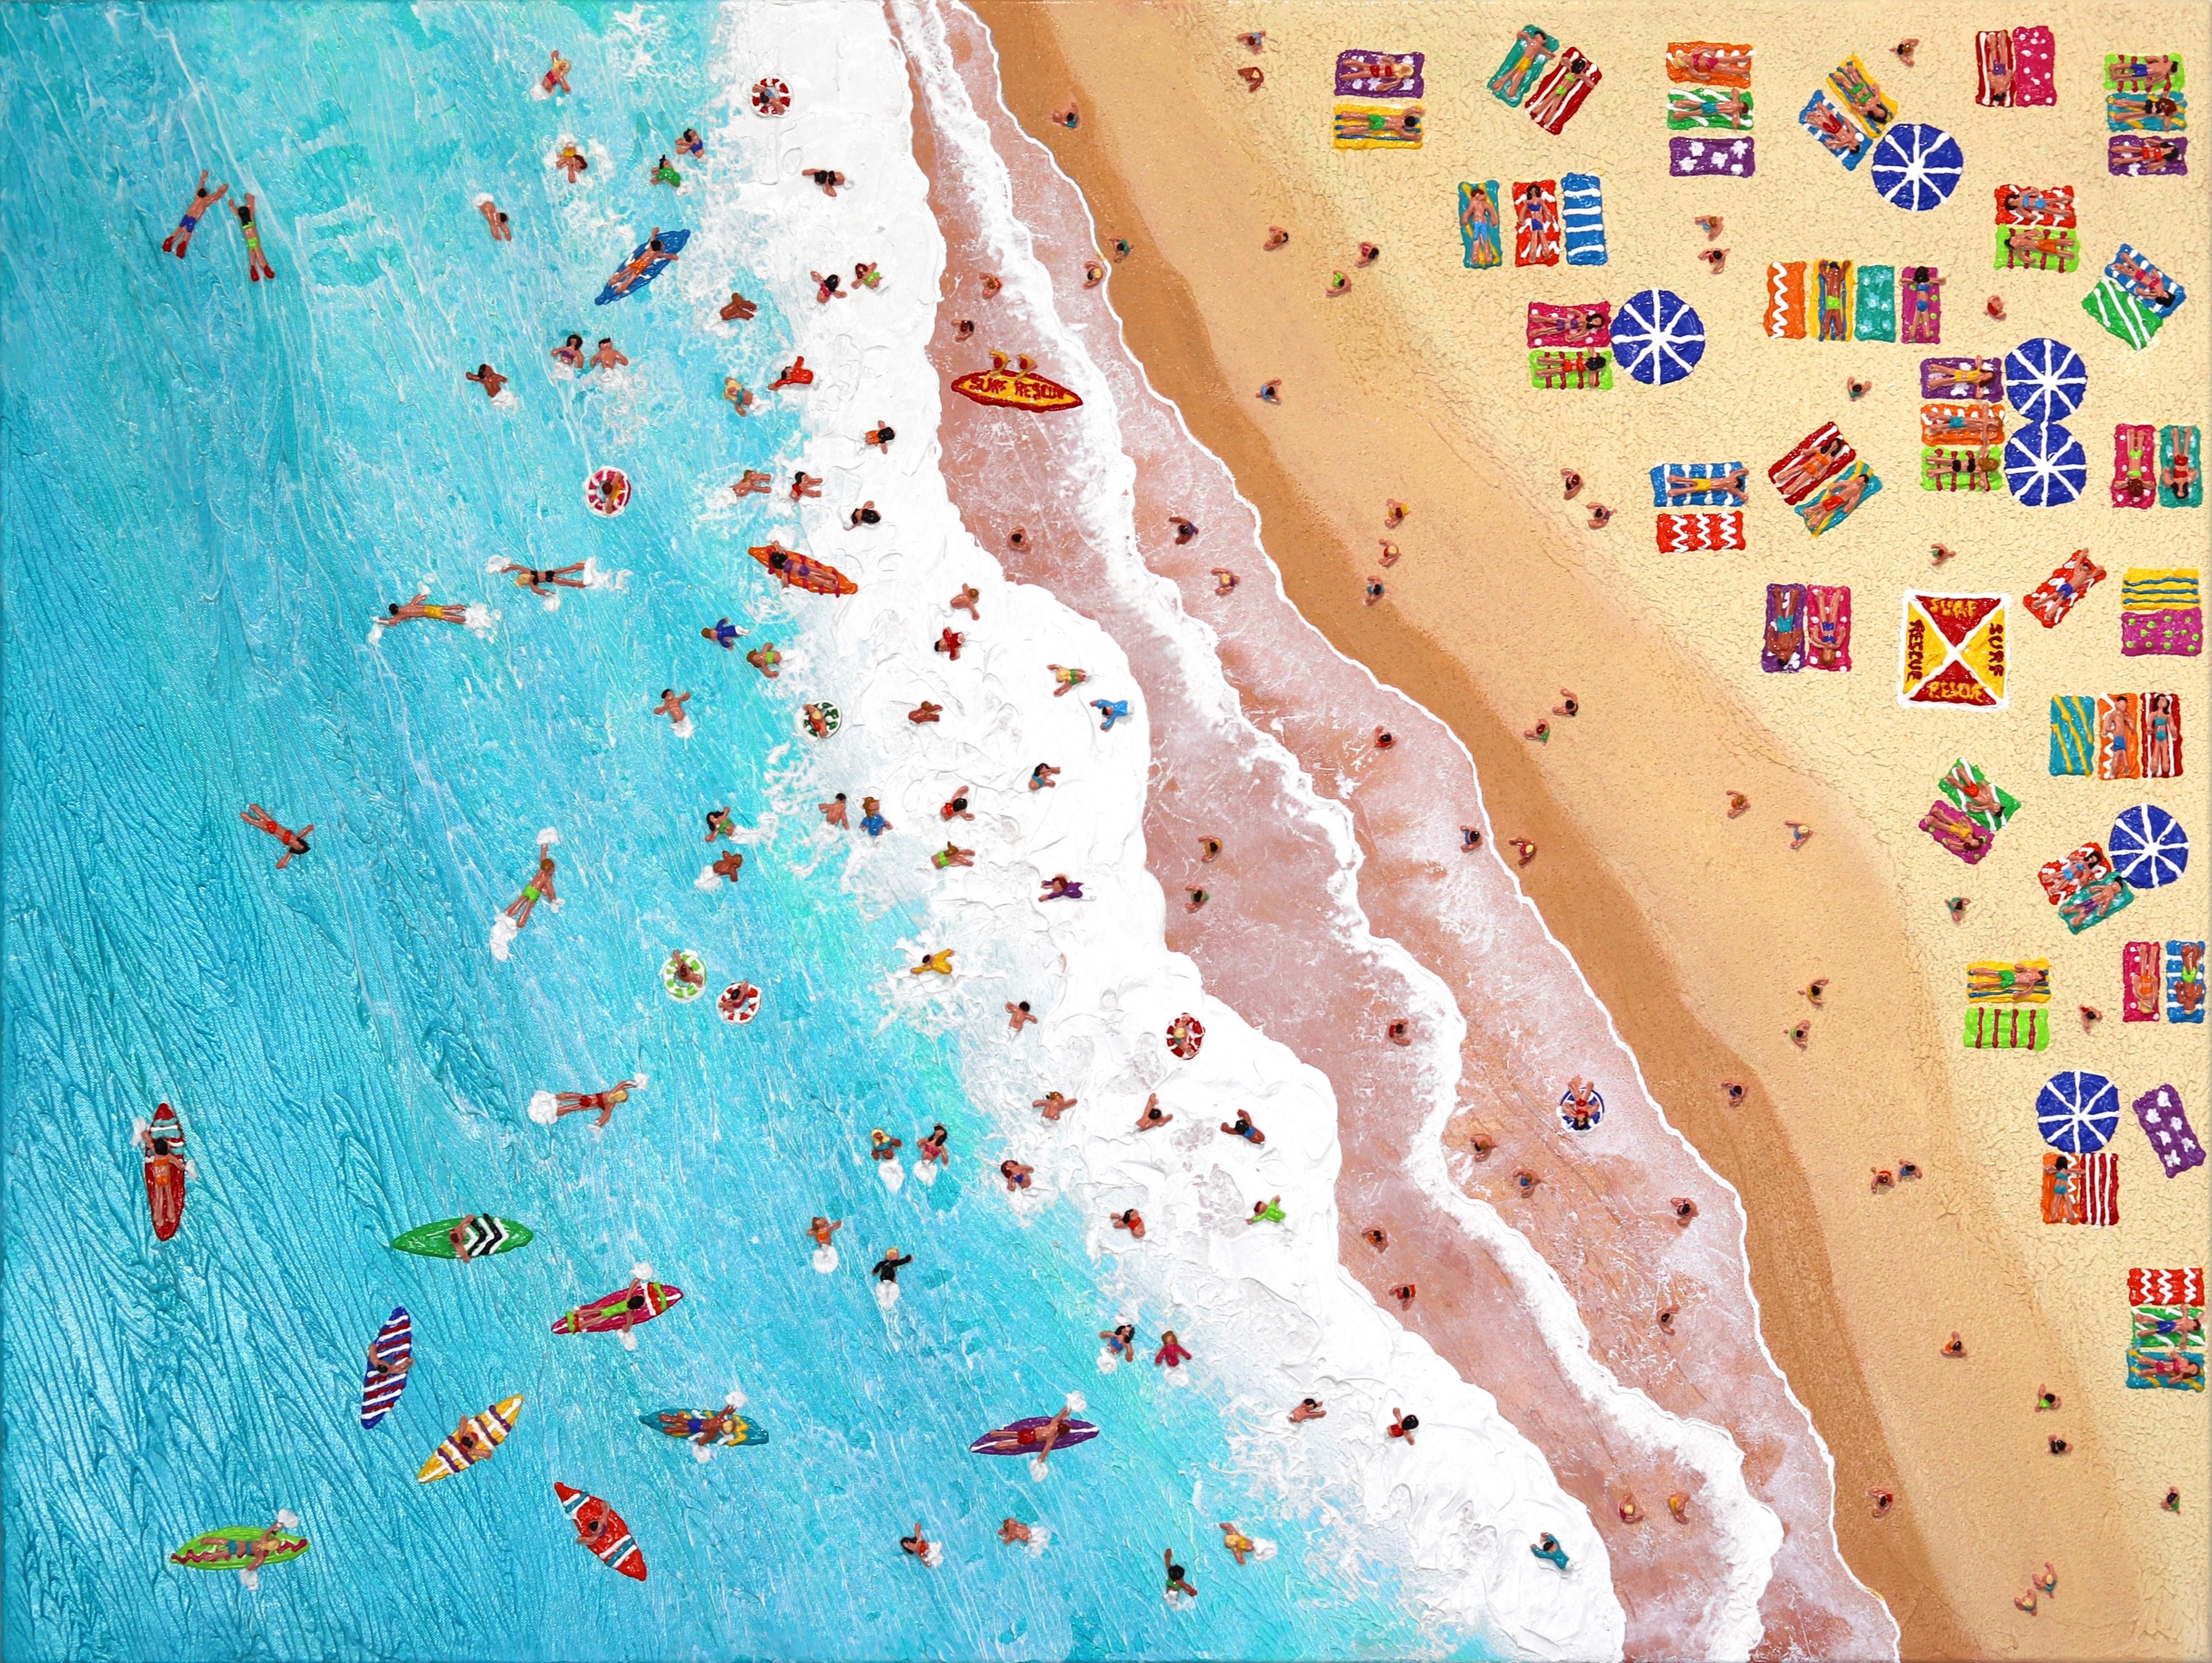 Les peintures aériennes texturées d'Elizabeth Langreiter, qui représentent des scènes de plage et d'océan, permettent de s'évader de la réalité dans un monde ludique et joyeux. Ses œuvres d'art mixtes évoquent souvent au spectateur de joyeux retours